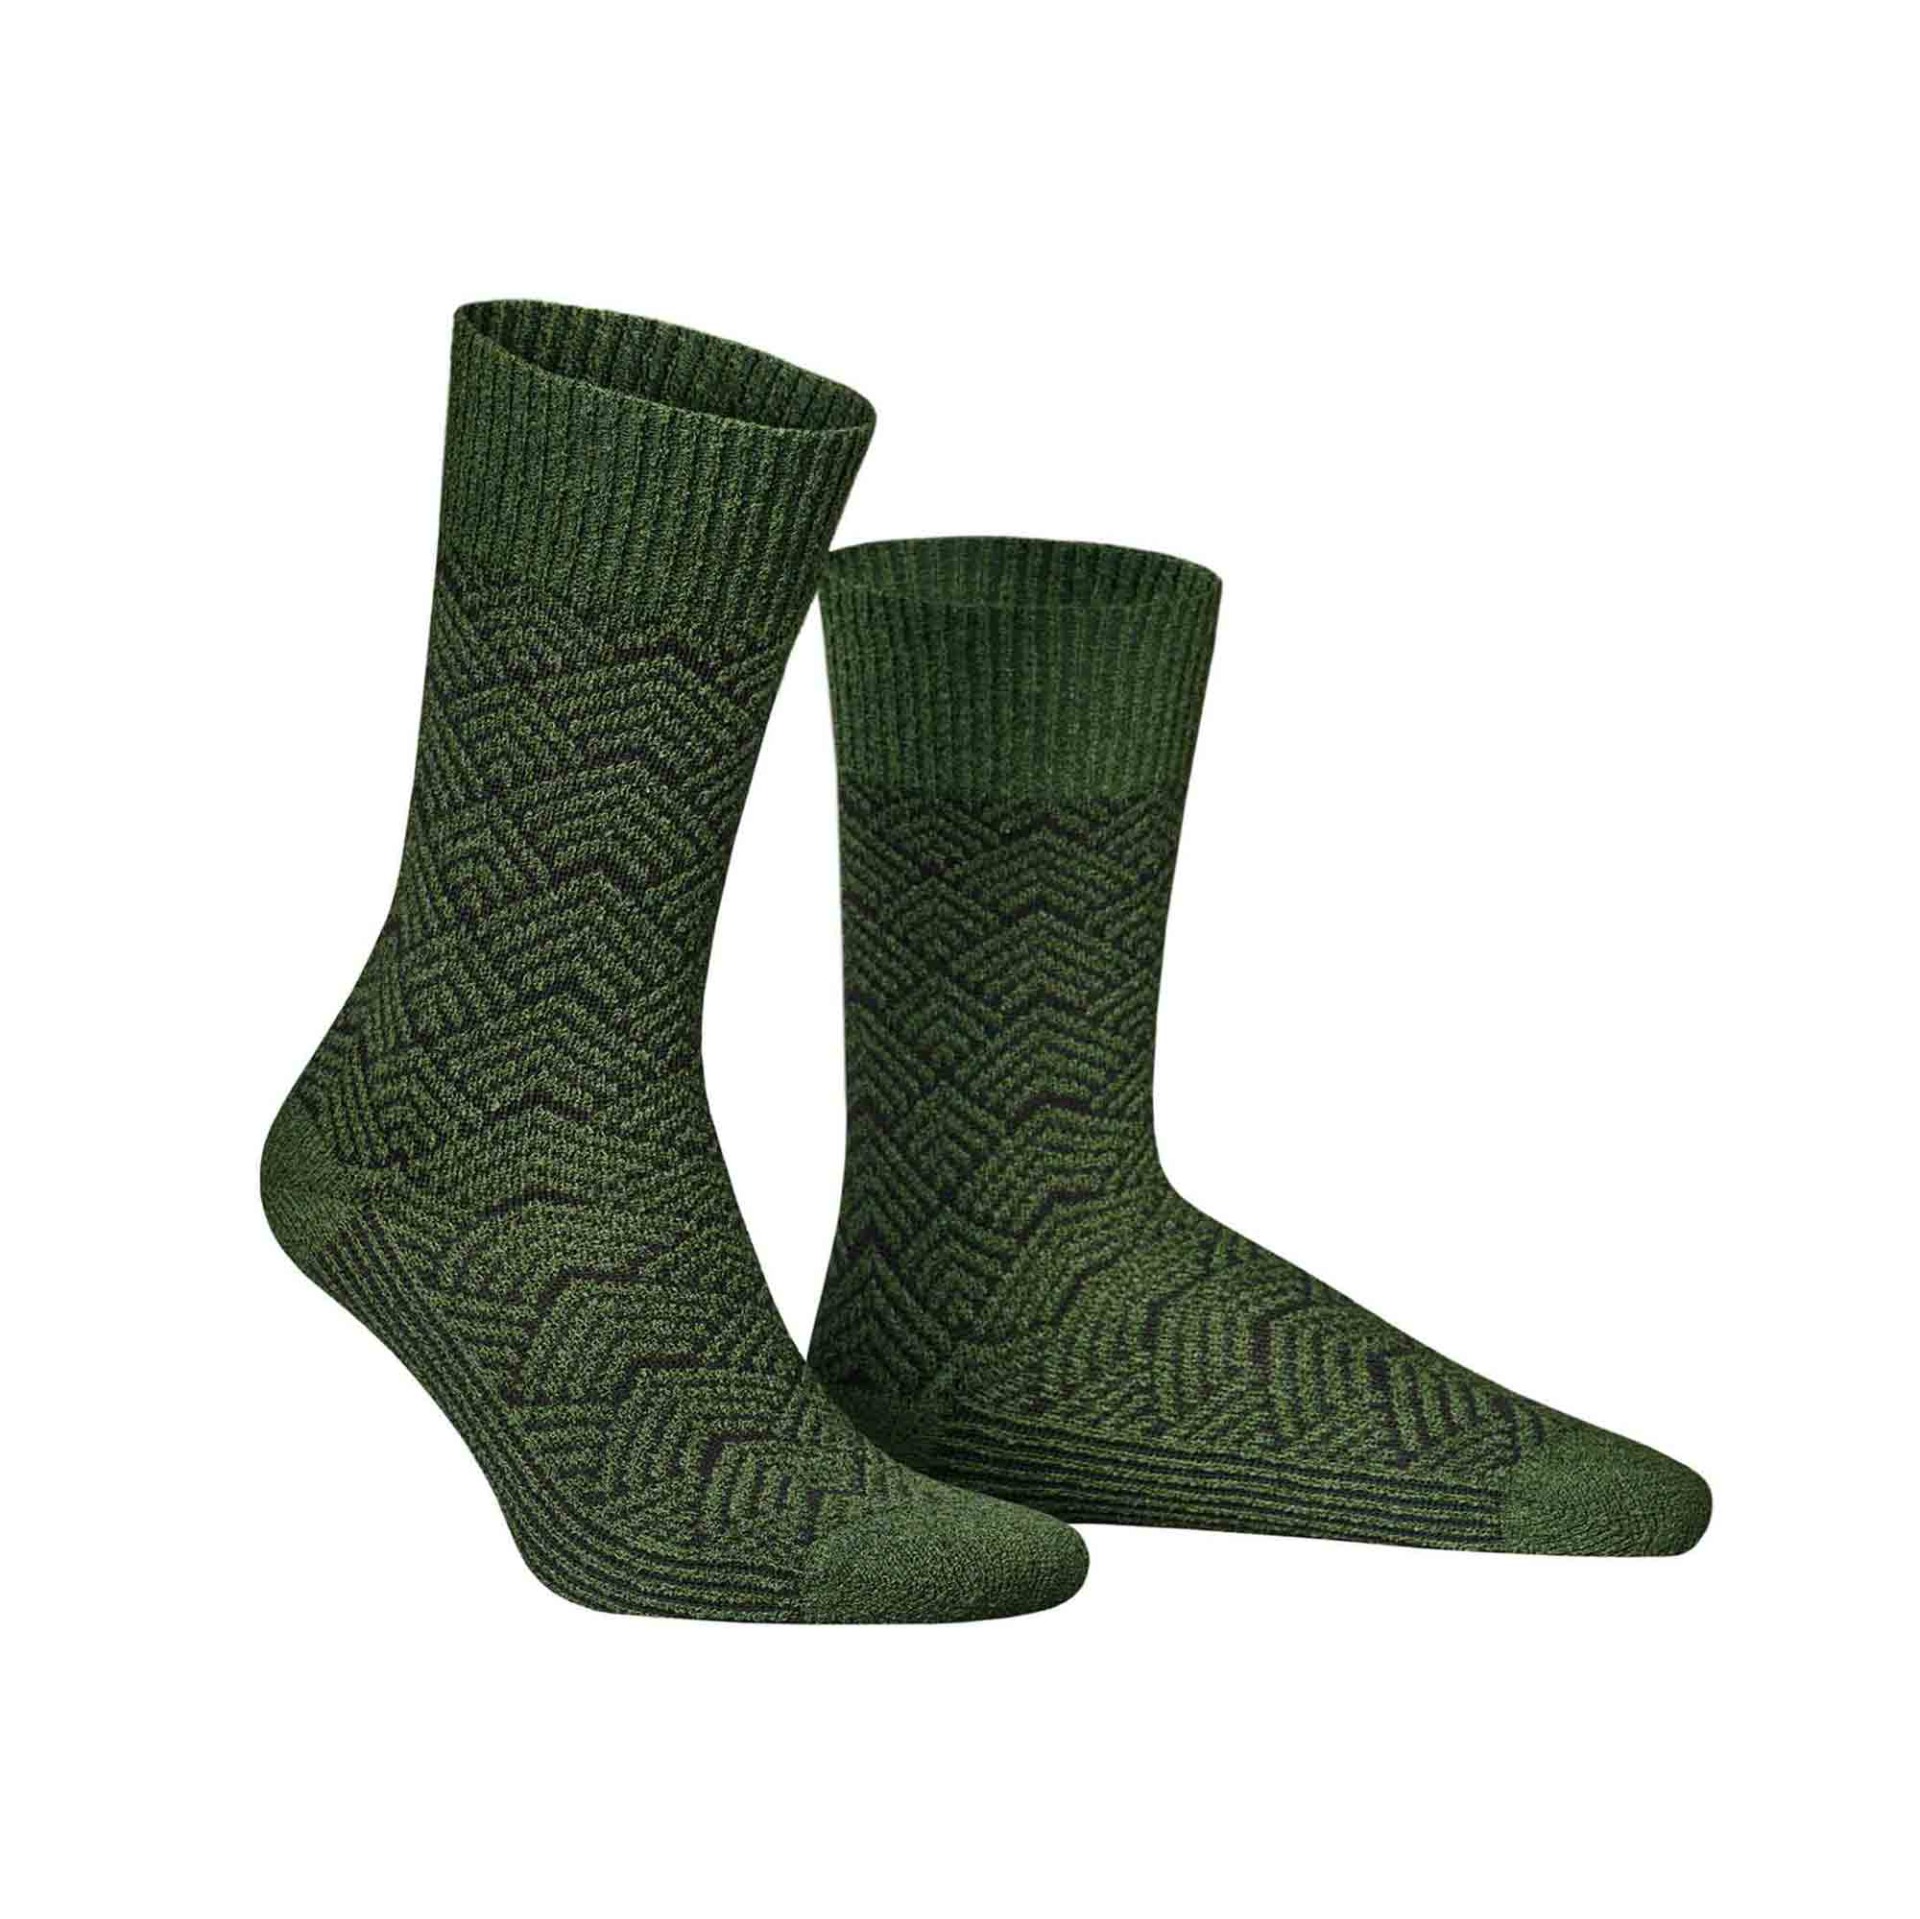 HUDSON Herren RARE -  39/42 - Socken mit coolem Retro-Muster - Forest 0885 (Grün)